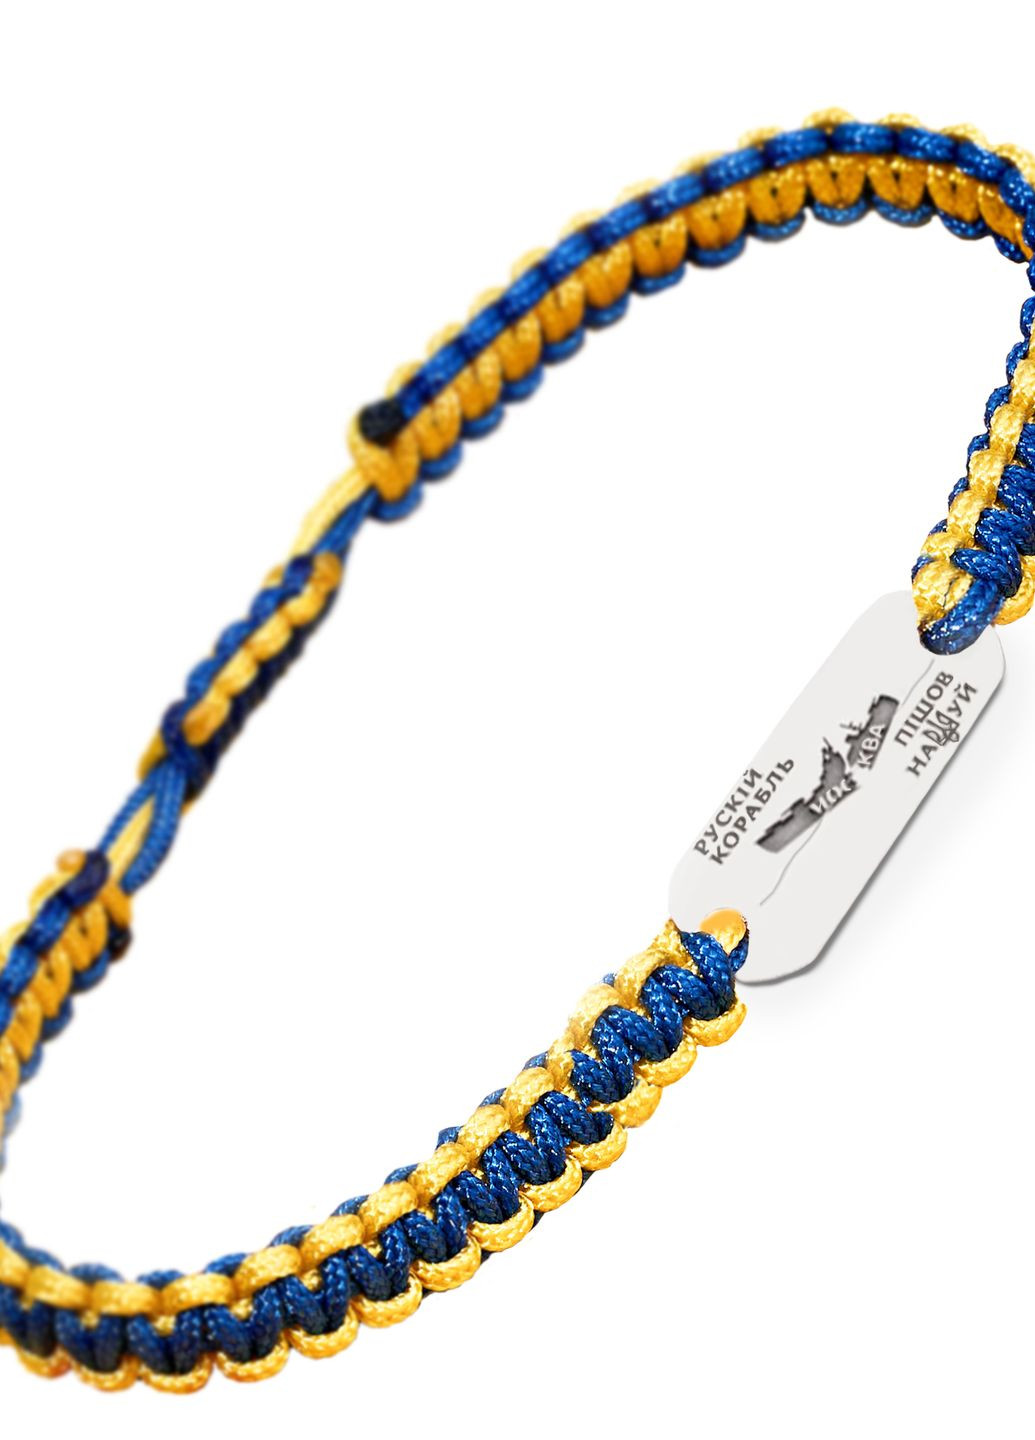 Серебряный браслет с пластиной «R. warship go F..K yourself!» на жёлто синей нити регулируется Family Tree Jewelry Line (266042189)